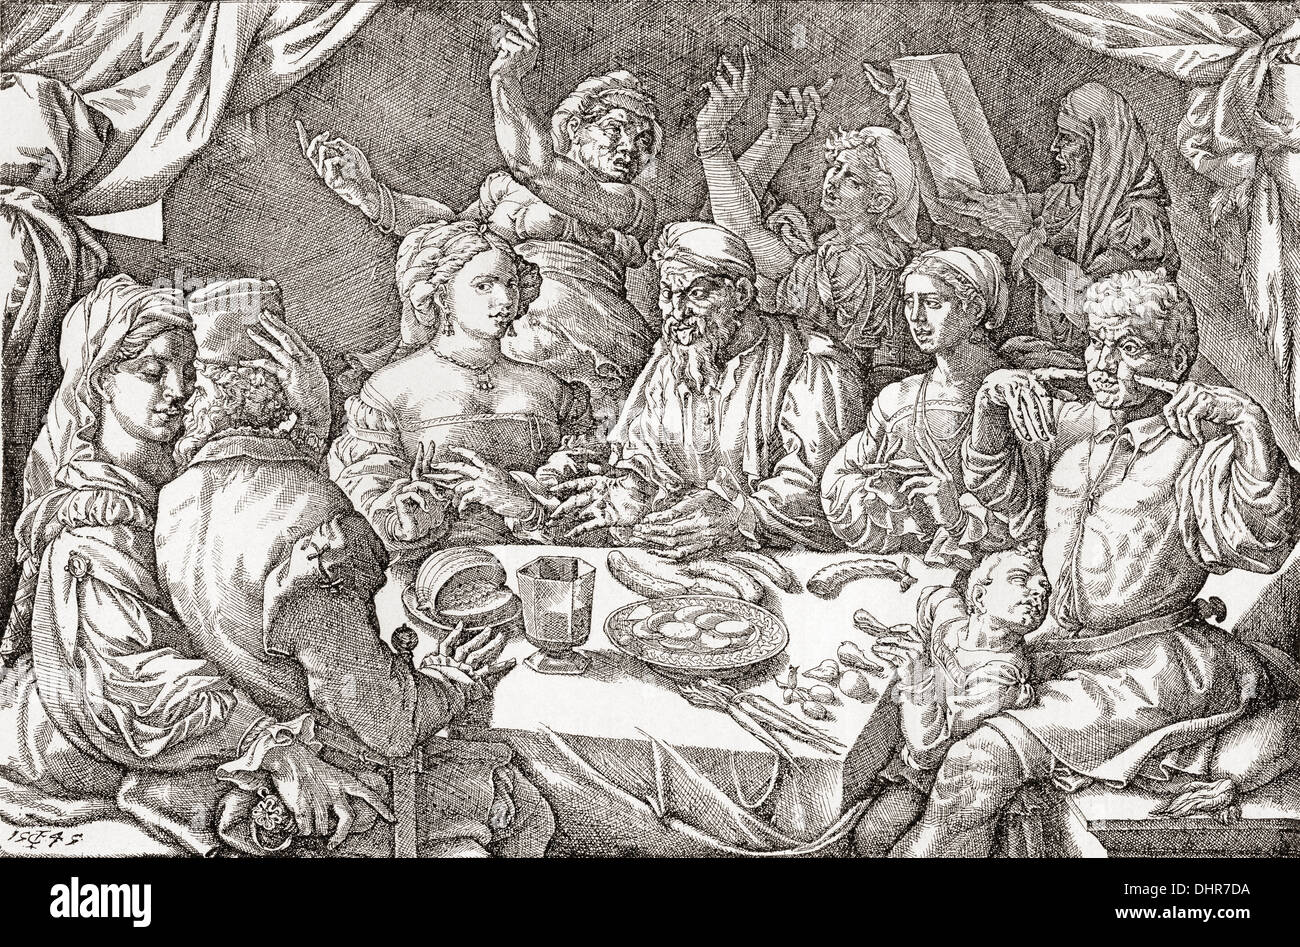 Comportamento grossolano al tavolo da pranzo durante il periodo rinascimentale. Dopo un spagnolo incisione su rame dal 1545. Foto Stock